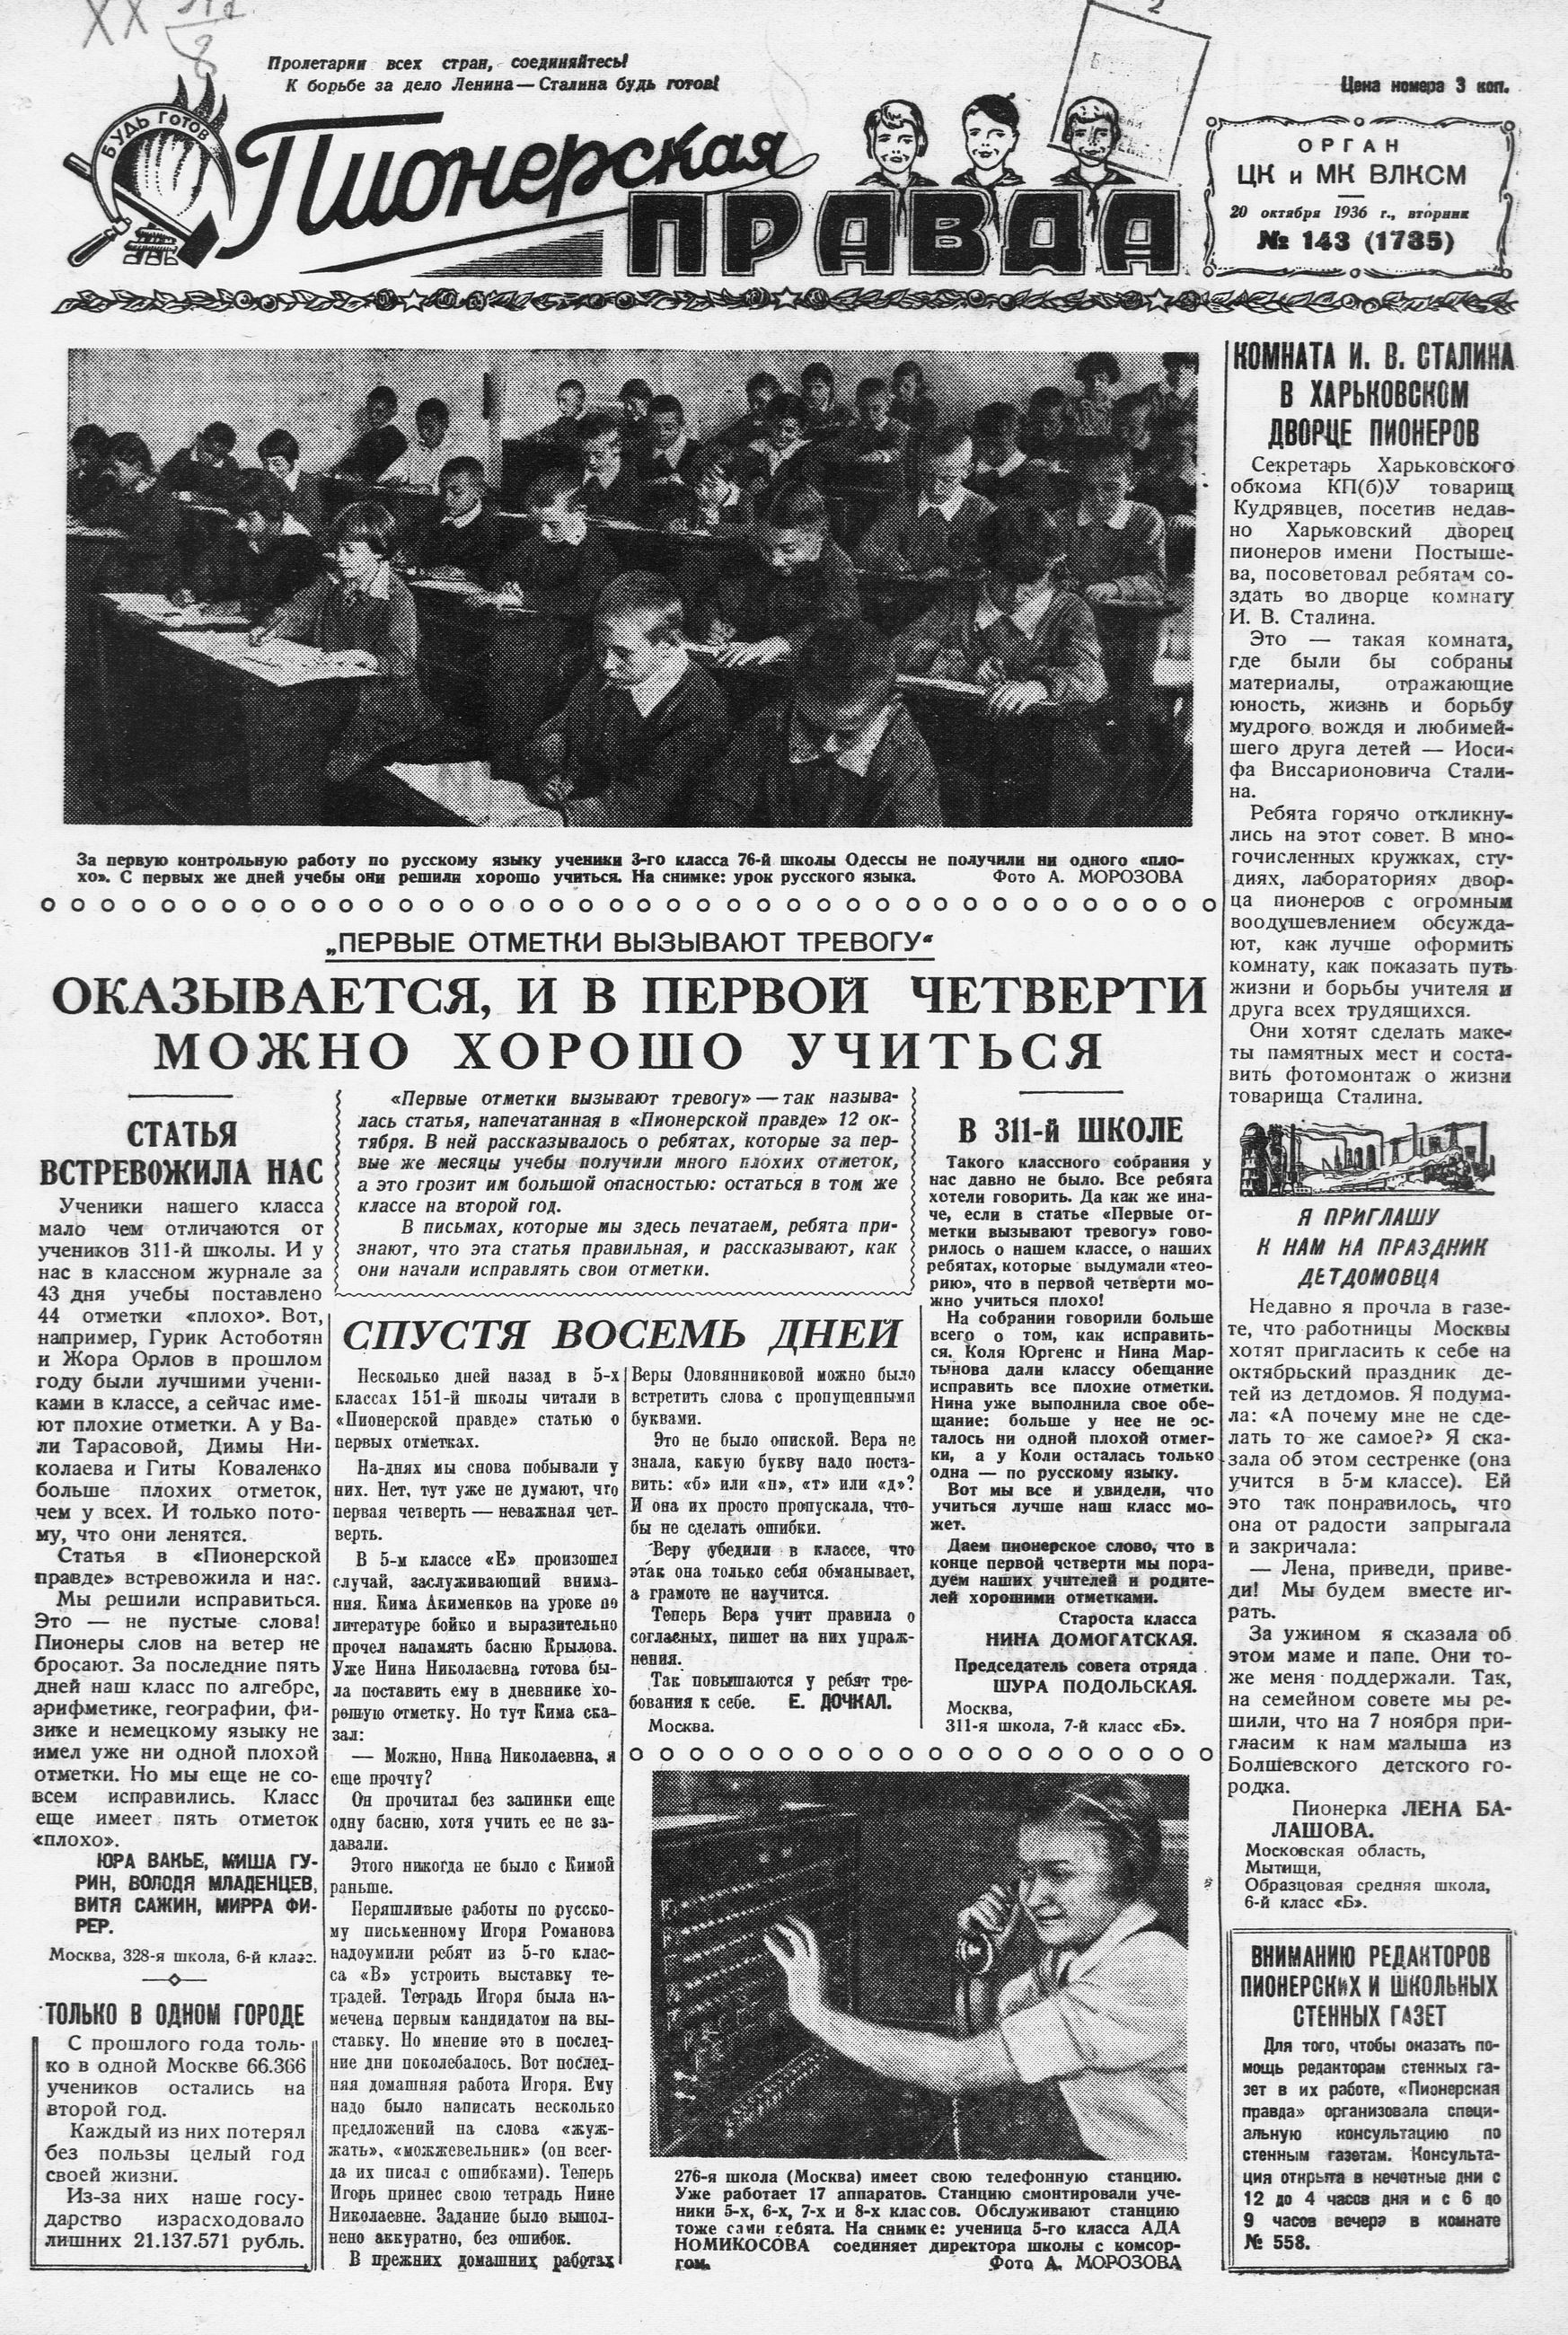 Пионерская правда. 1936. № 143 (1785): Орган ЦК и МК ВЛКСМ - 1936